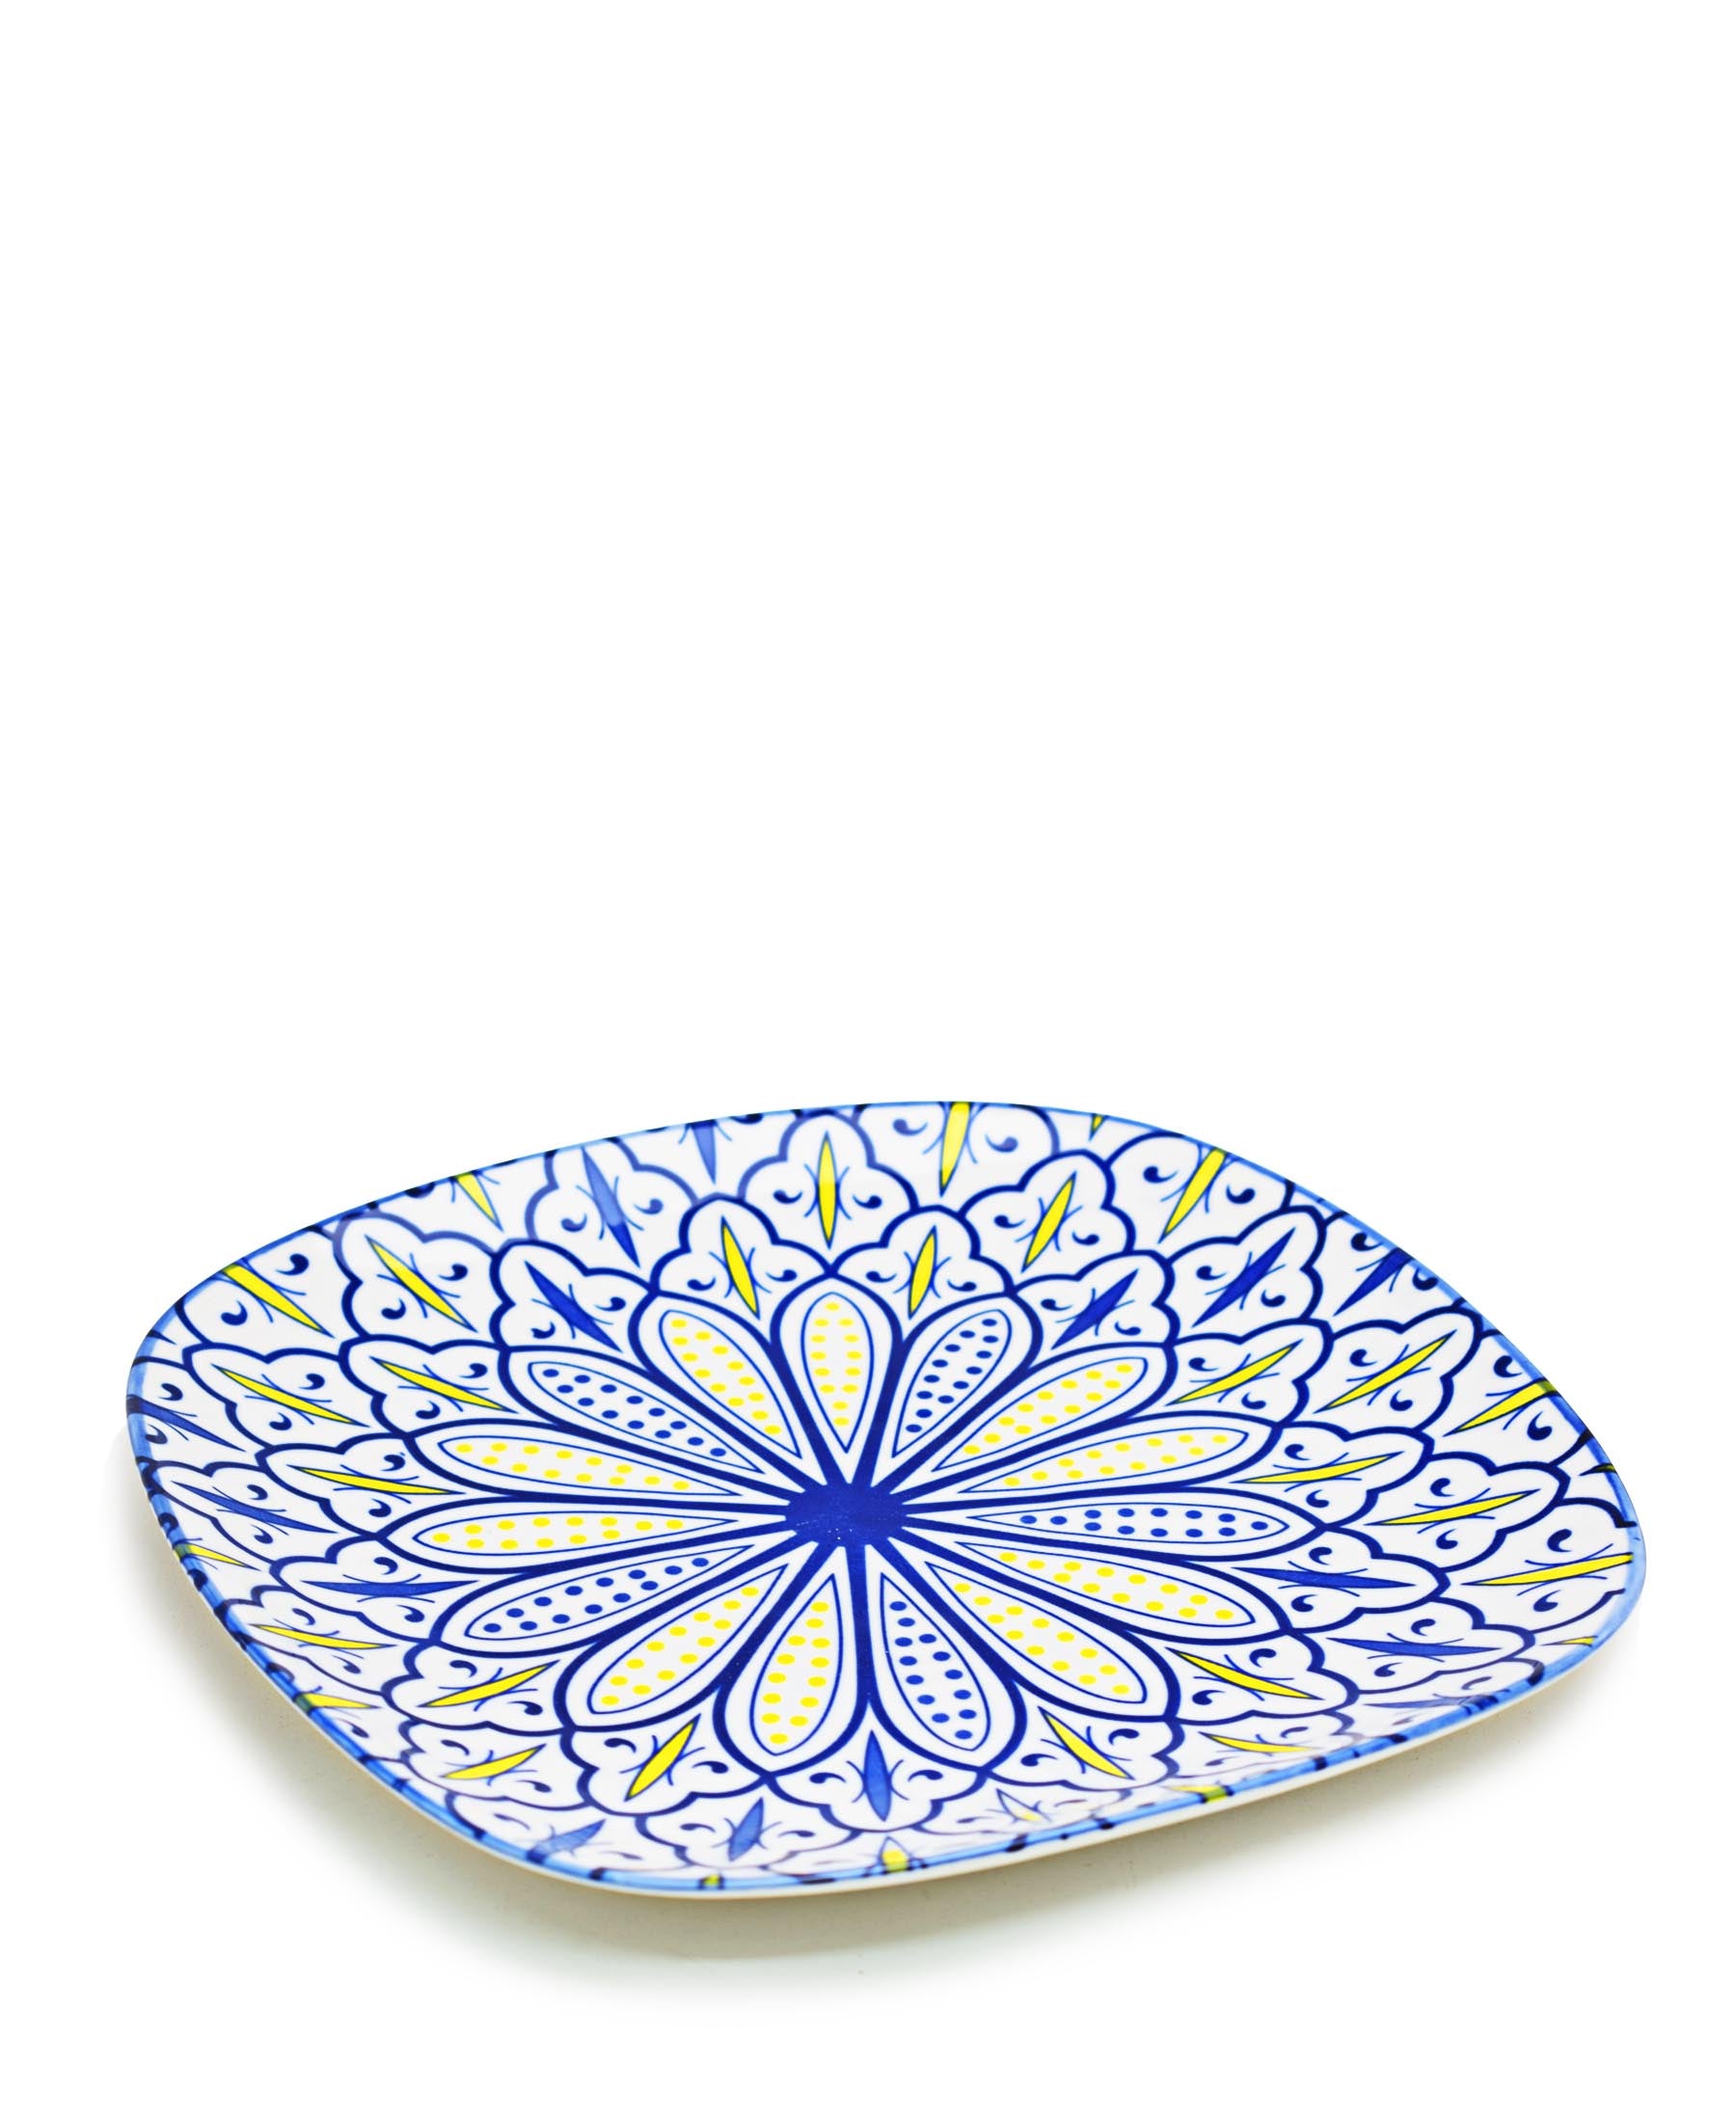 Shanghai Dinner Plate 10.5cm - Blue & White